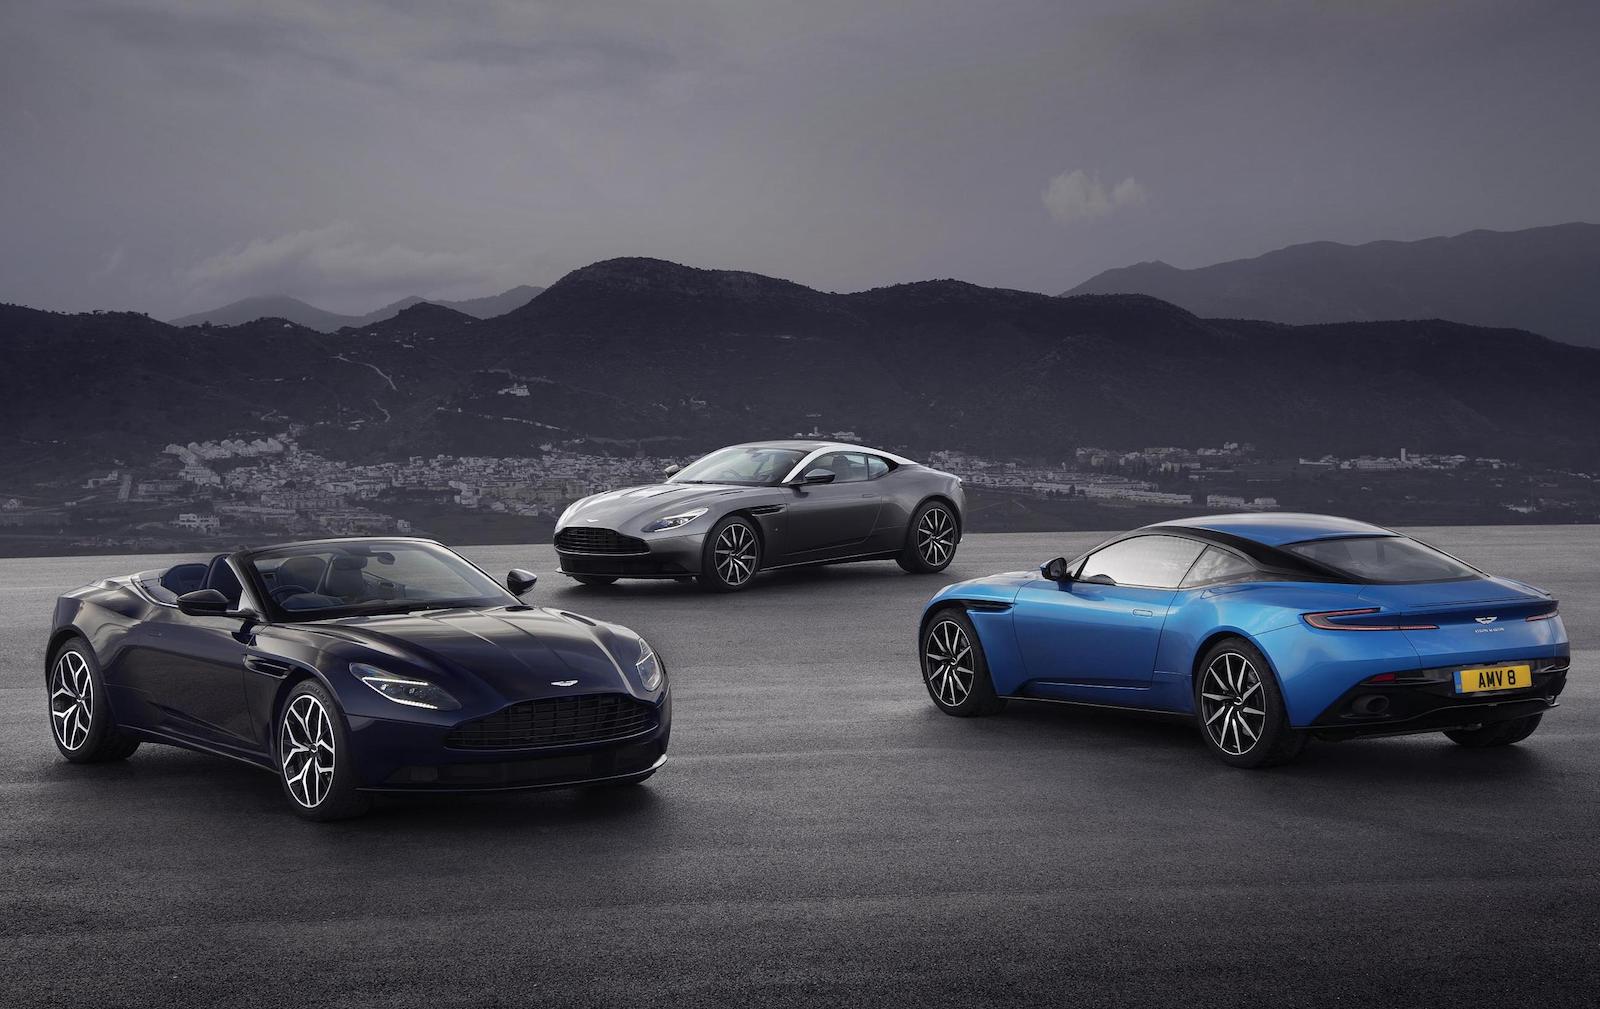 Aston Martin returns positive profit in 2017, record revenue